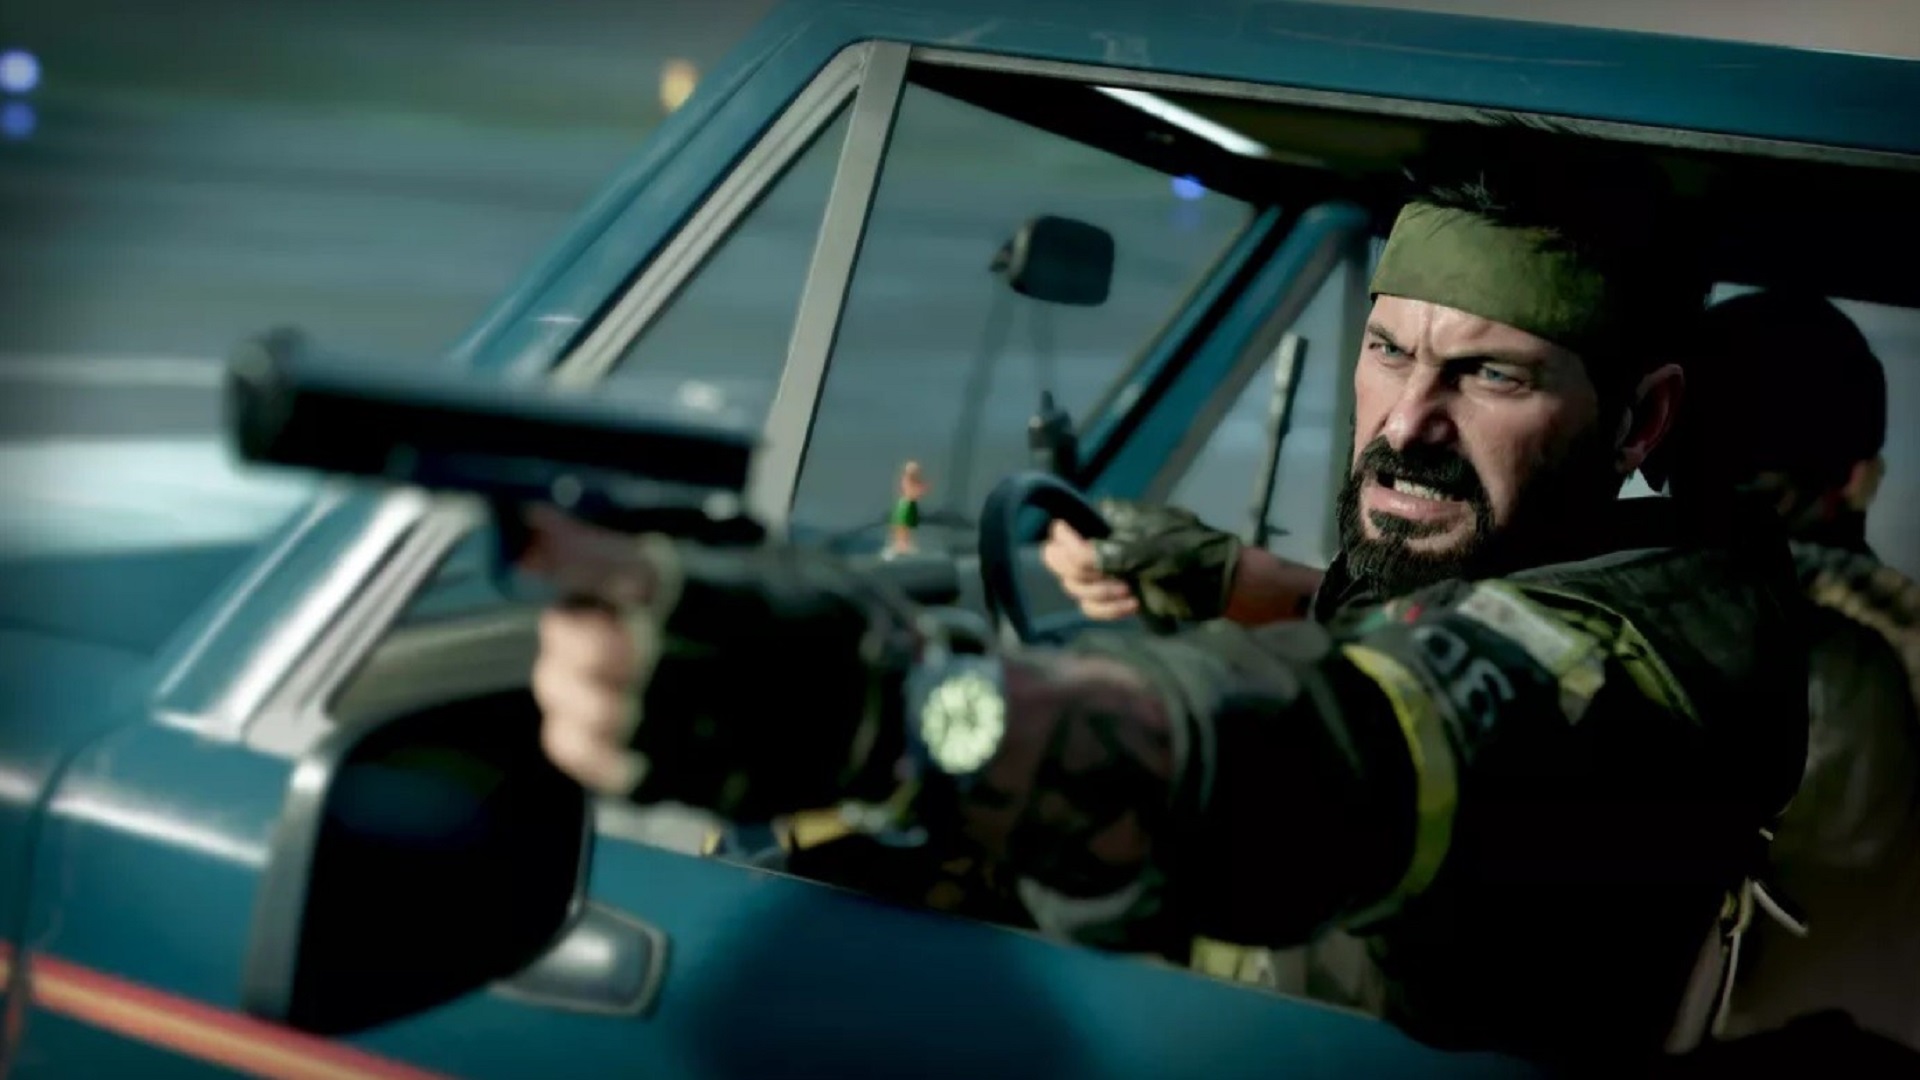 Firwat Call Of Duty: Black Ops Kale Krich kascht $ 70 op PS5 an Xbox Series X mécht perfekt Sënn